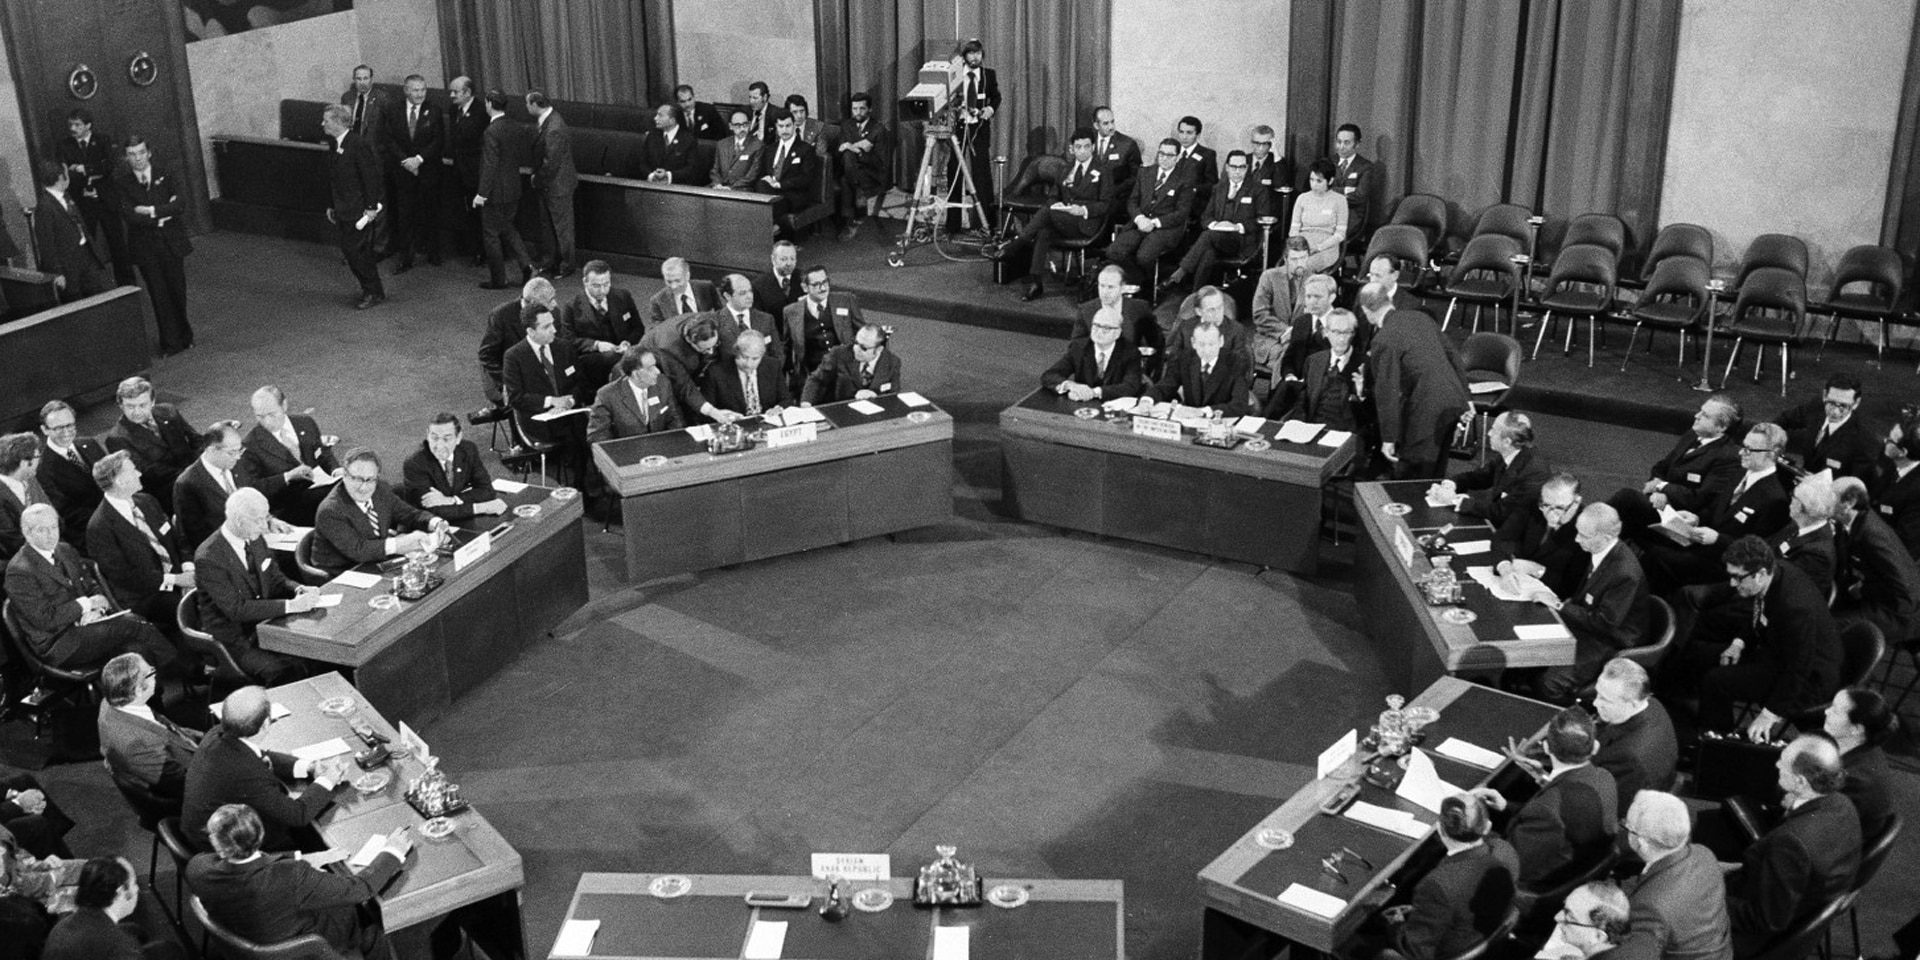 Schwarzweiss-Aufnahme: Sieben Tische sind in einem Konferenzsaal in einem Kreis angeordnet, an welchen Herren sitzen.